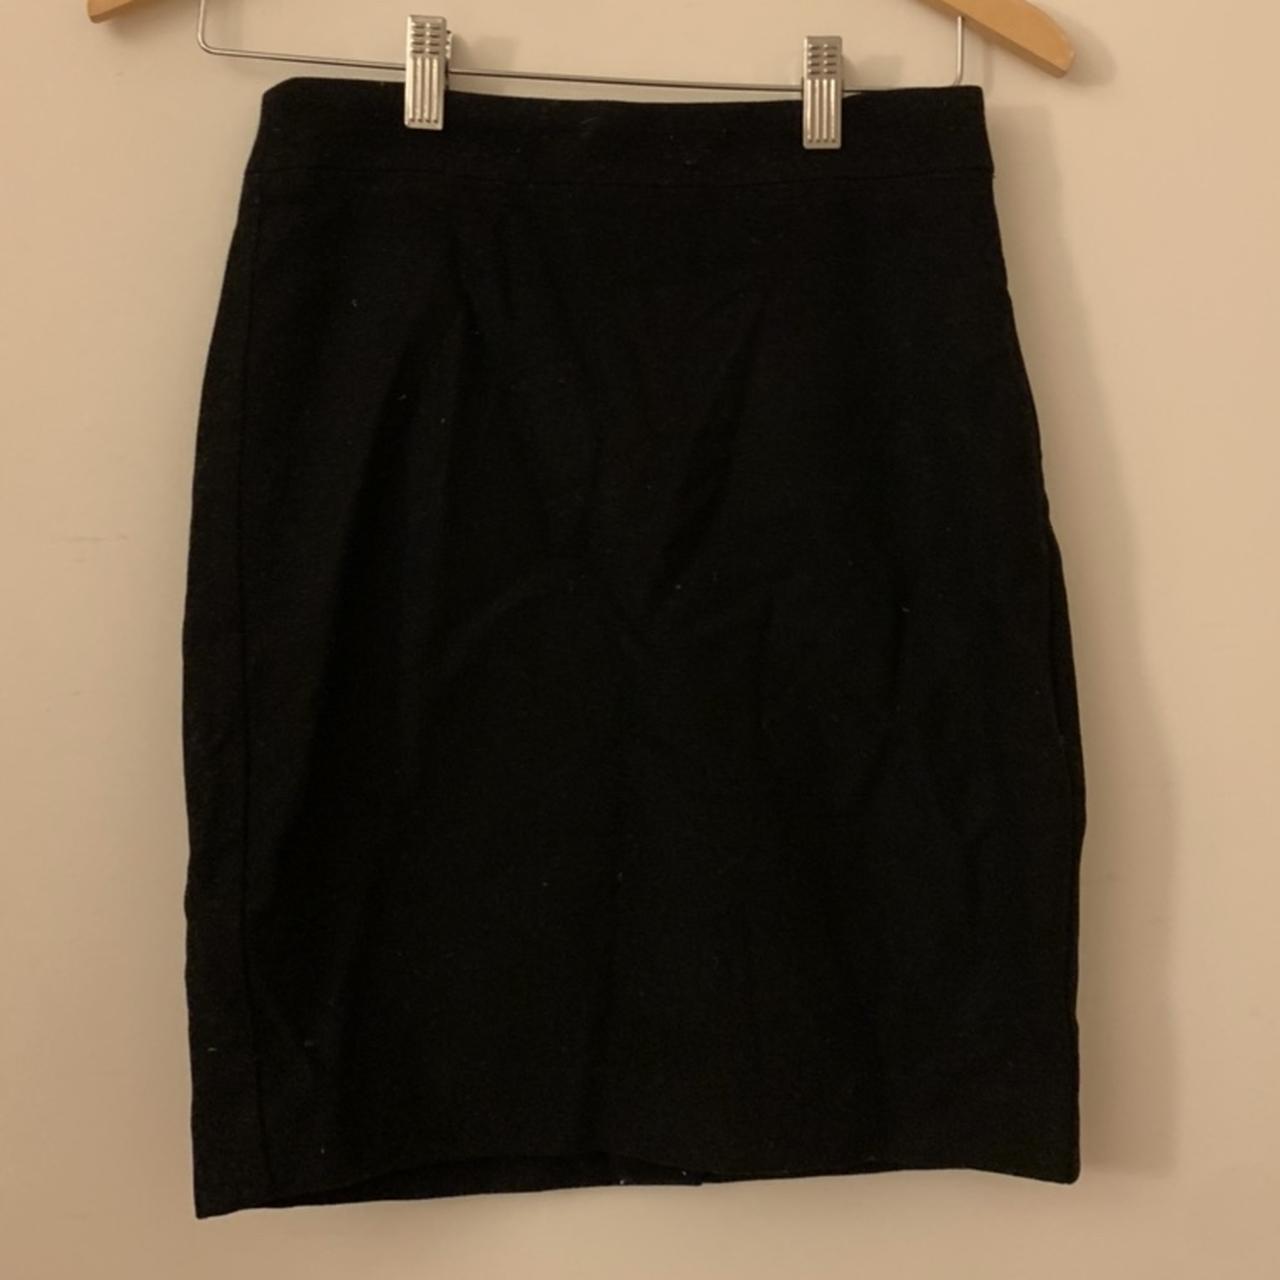 J Crew Pencil Skirt -brand new -must be lint... - Depop